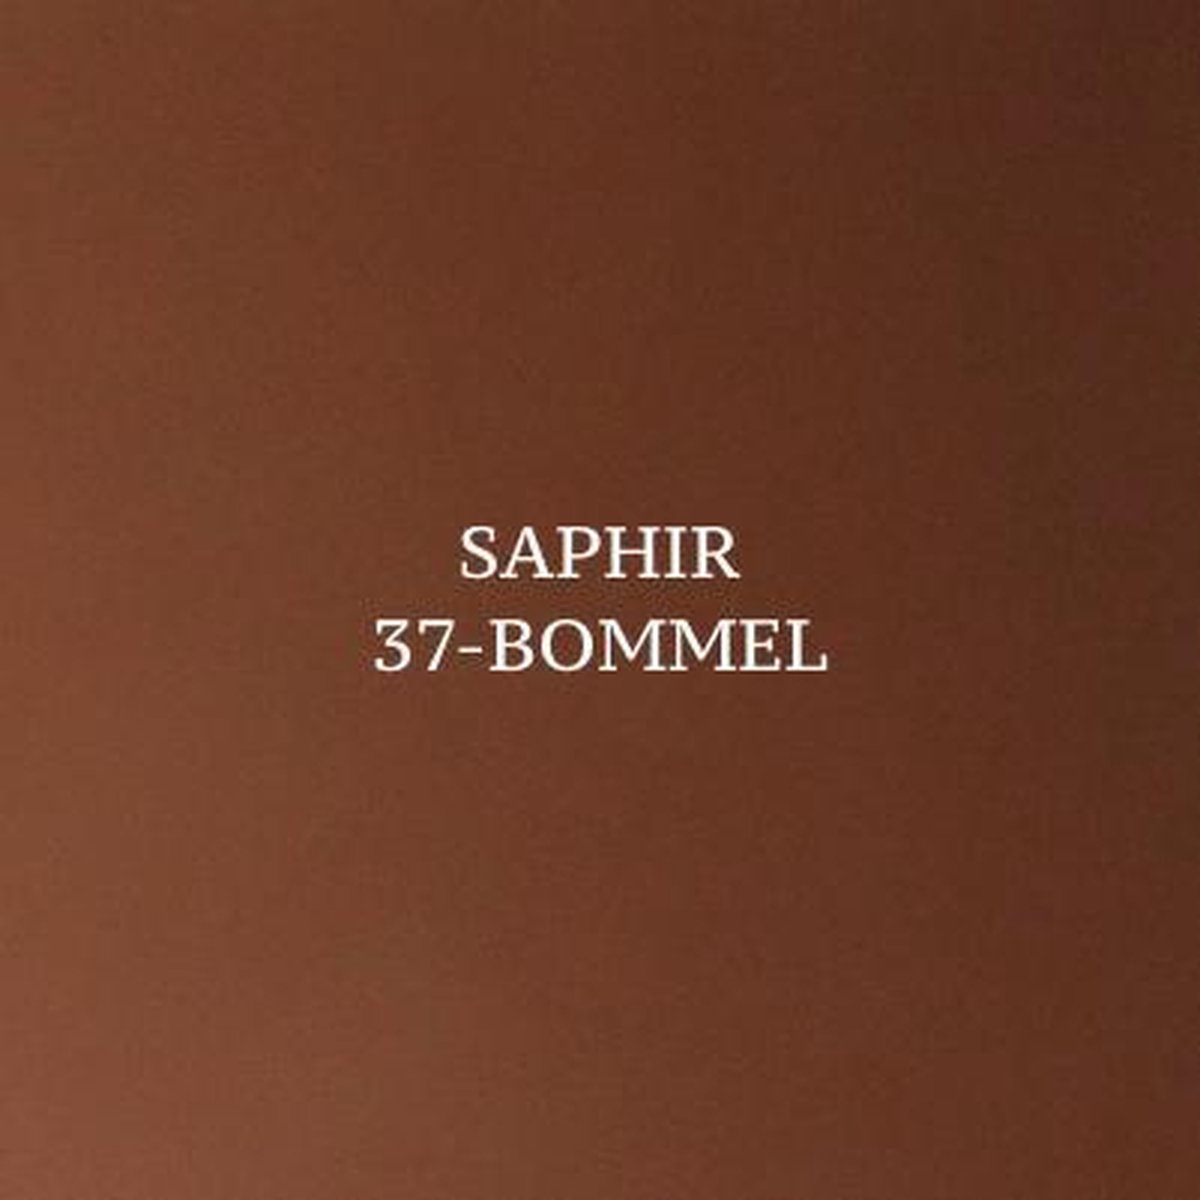 Saphir Renovétine Suede/Nubuck Spray - Khaki 28 - 200 ml